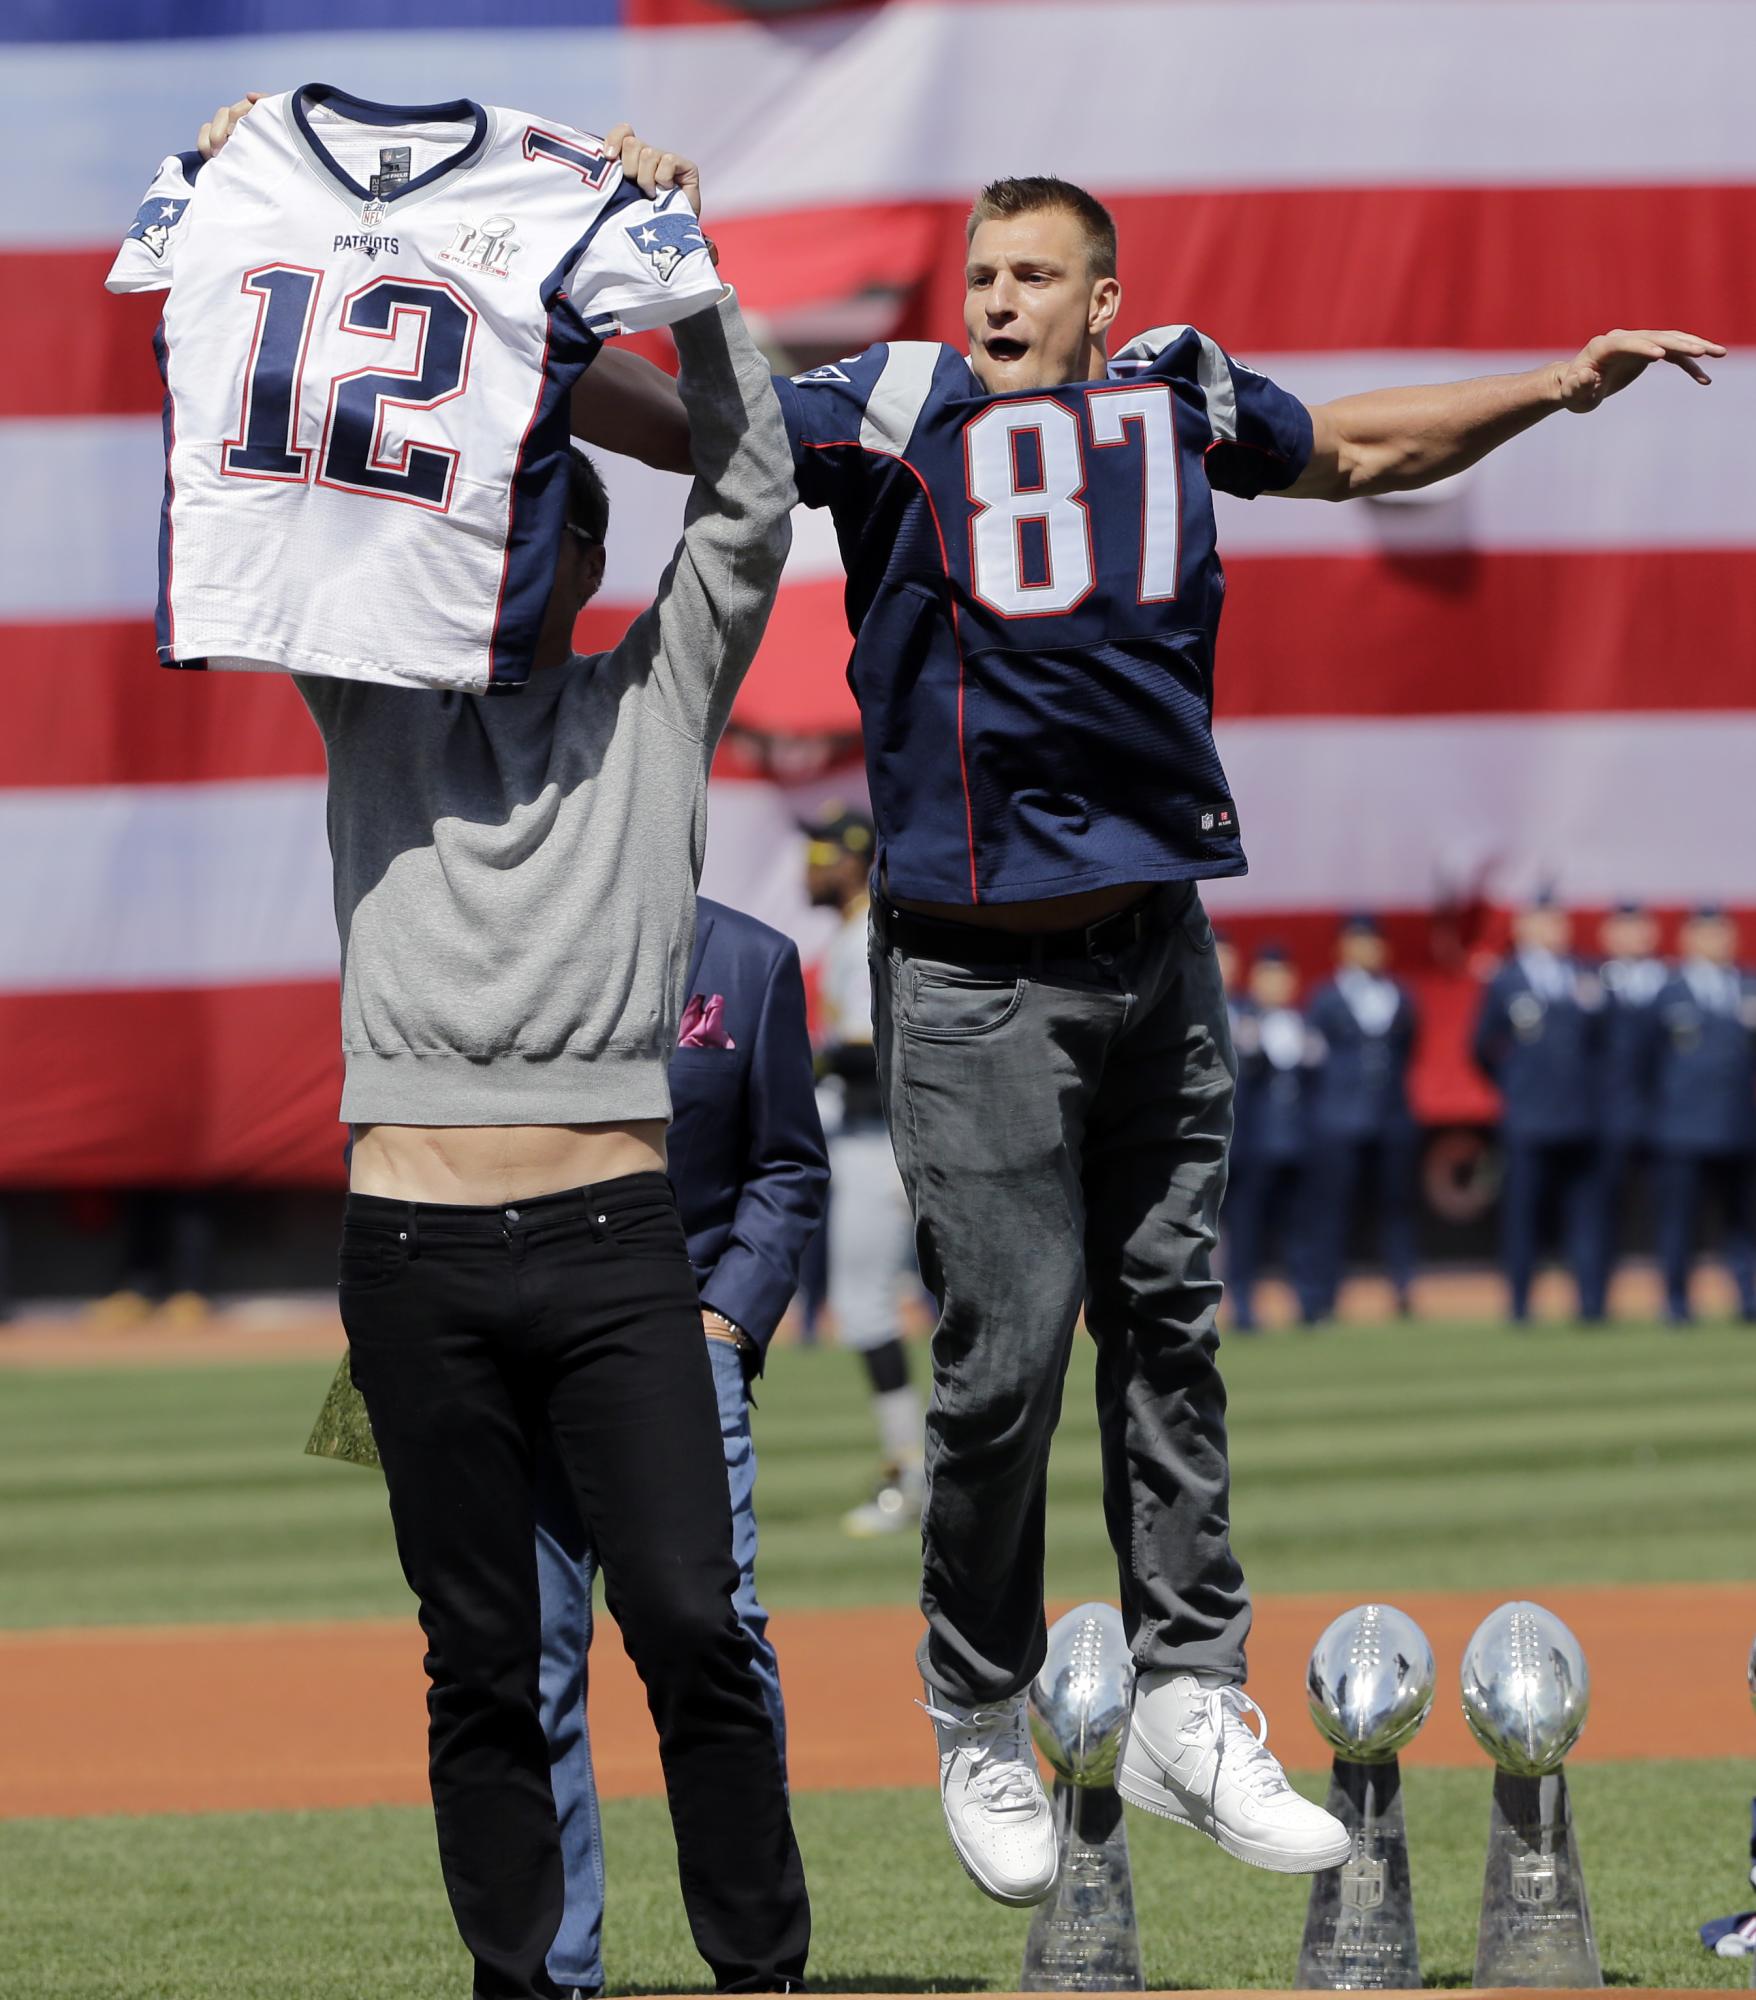 Rob Gronkowski, de los Patriots, salta sobre su compañero de equipo Tom Brady para bromear quitándole la camiseta que le había sido robada al “quaterback” de New England durante el Super Bowl. La broma ocurrió el 3 de abril en la apertura del equipo de Boston.